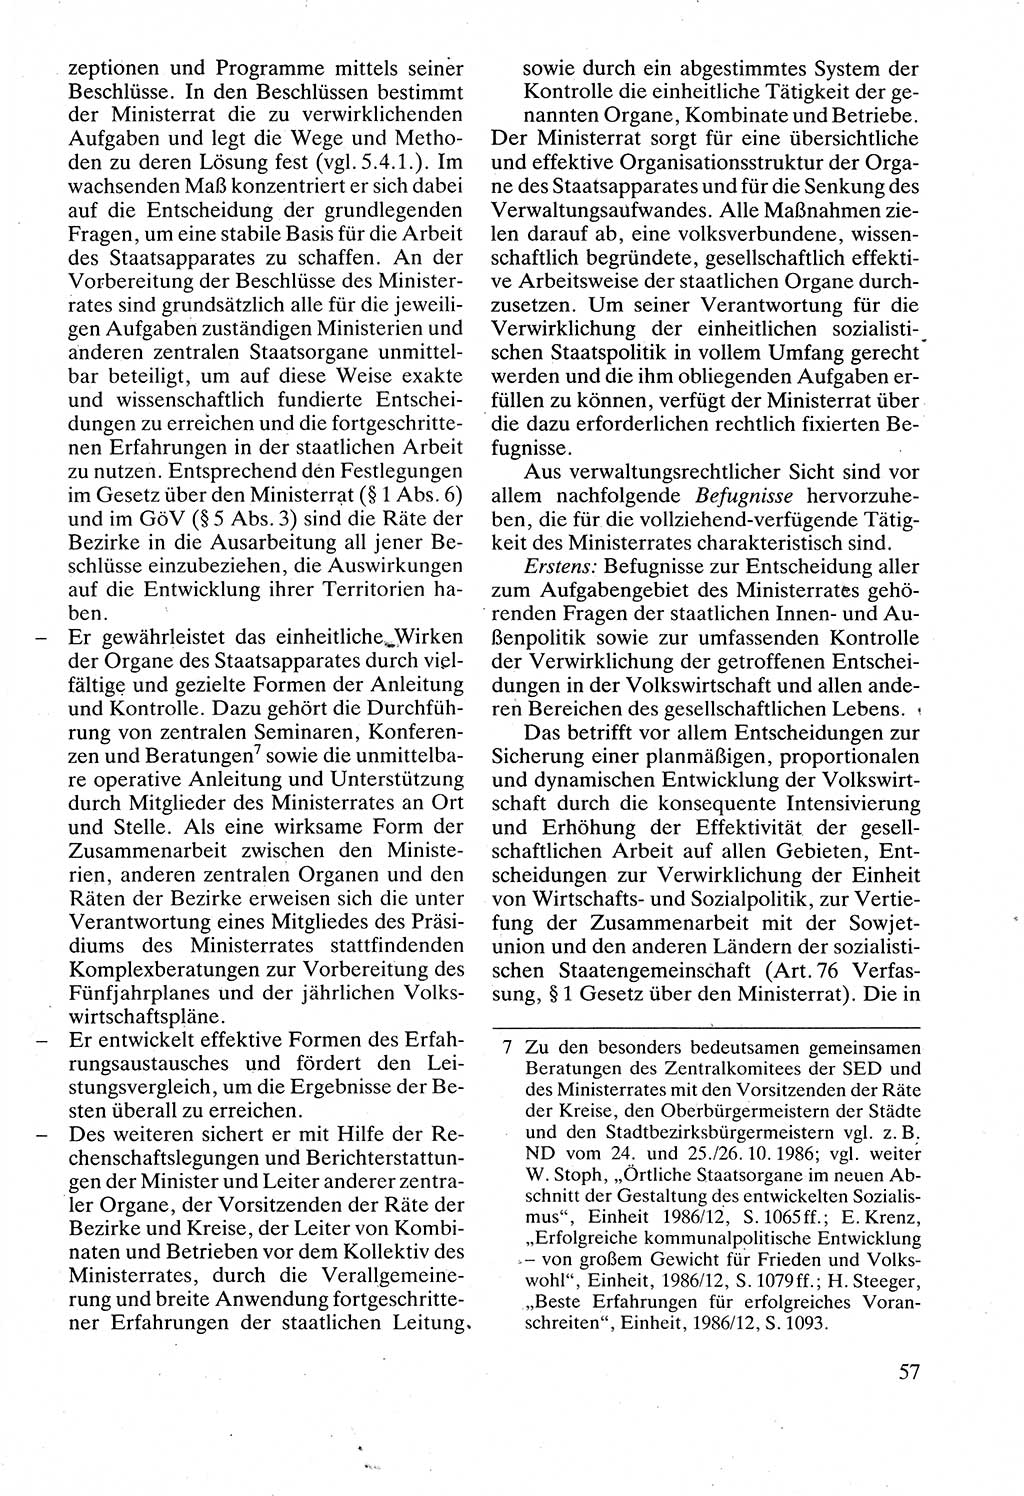 Verwaltungsrecht [Deutsche Demokratische Republik (DDR)], Lehrbuch 1988, Seite 57 (Verw.-R. DDR Lb. 1988, S. 57)